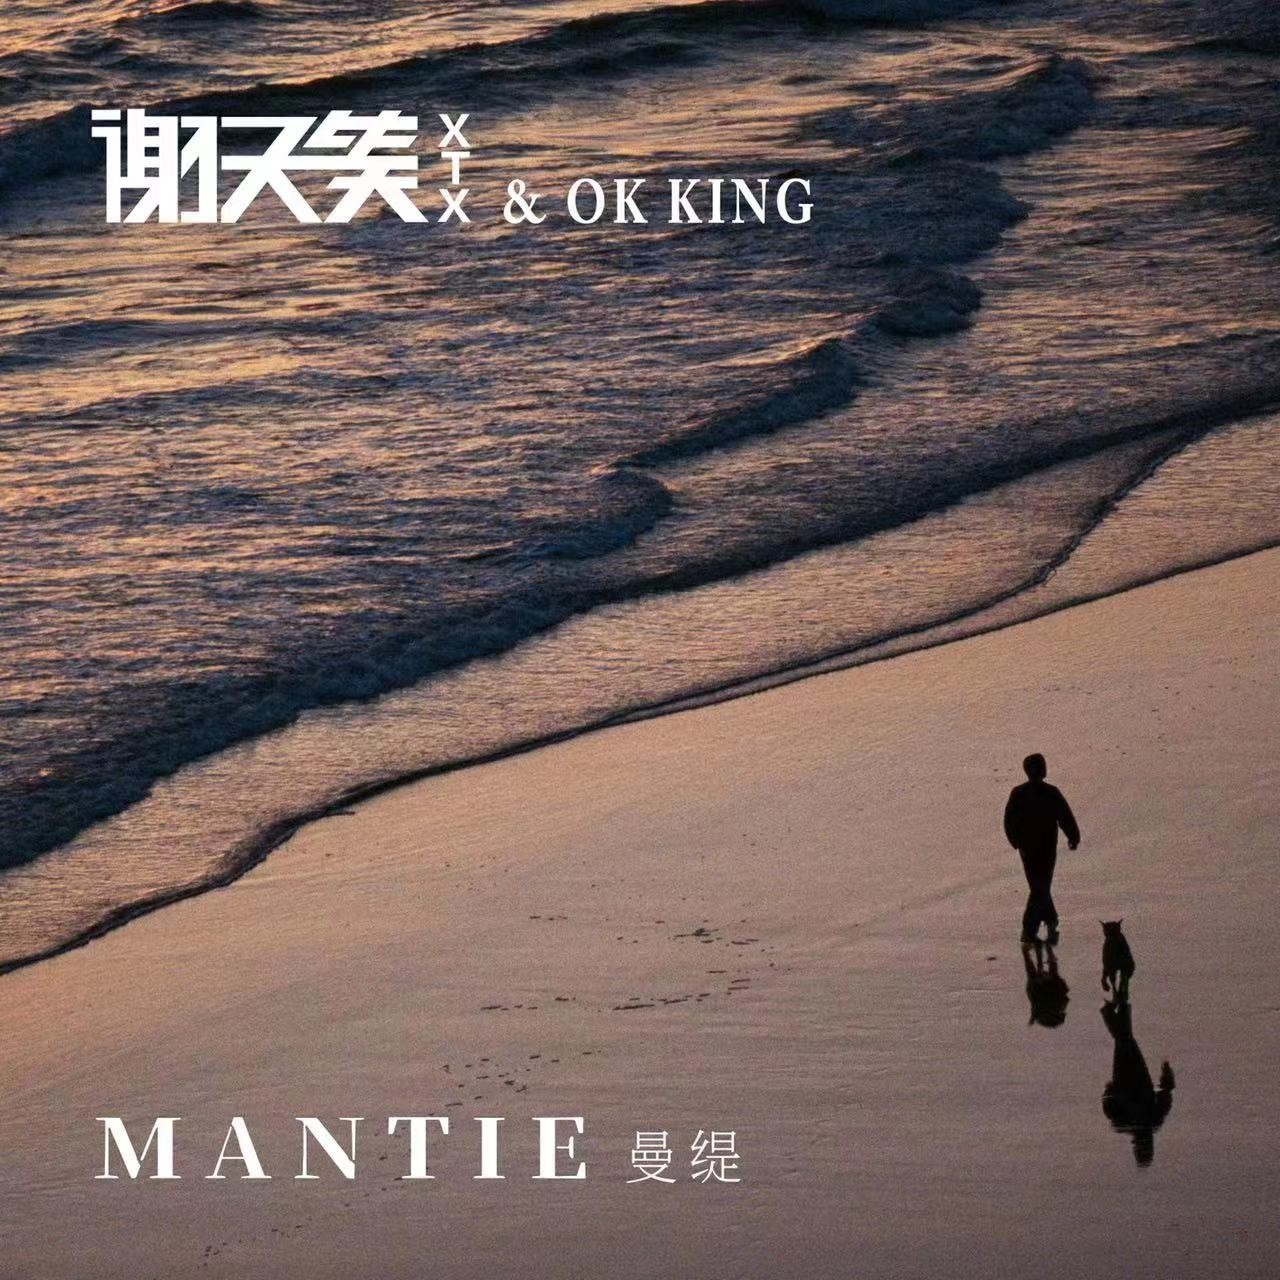 谢天笑新歌《Mantie》: “狗肉节” 是野蛮人漠视生命的